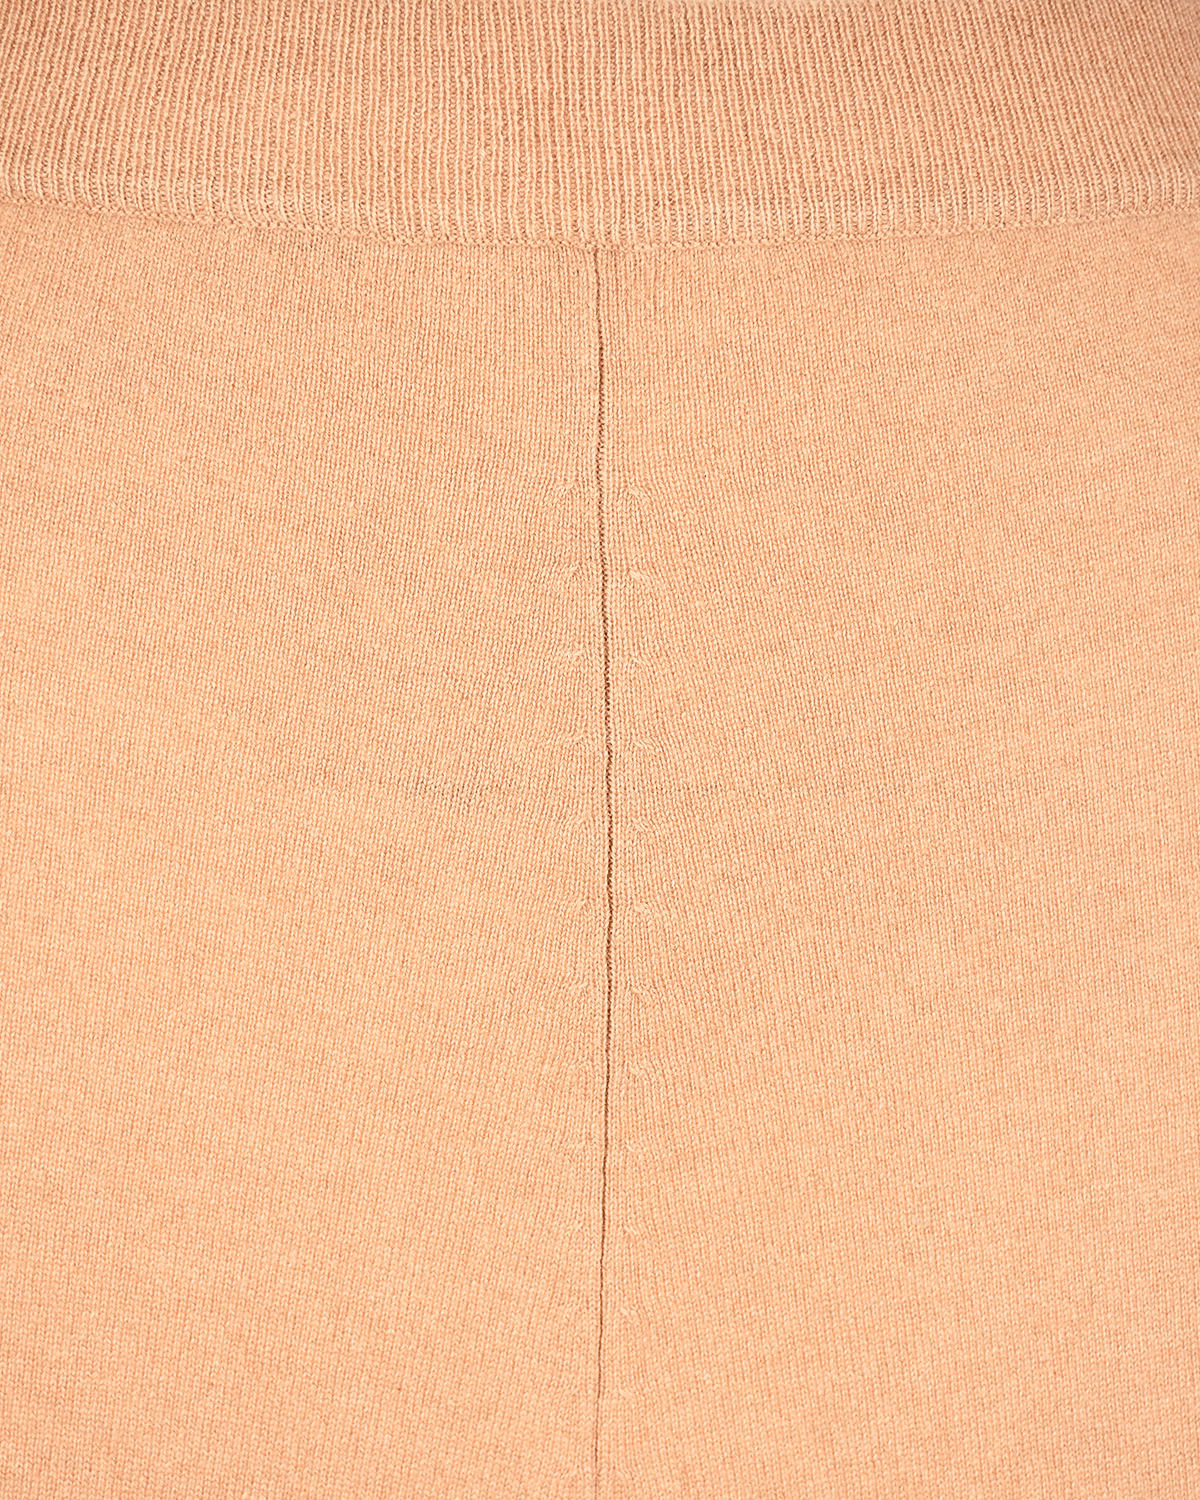 Коричневая юбка из кашемира Arch4, размер 40, цвет коричневый - фото 7